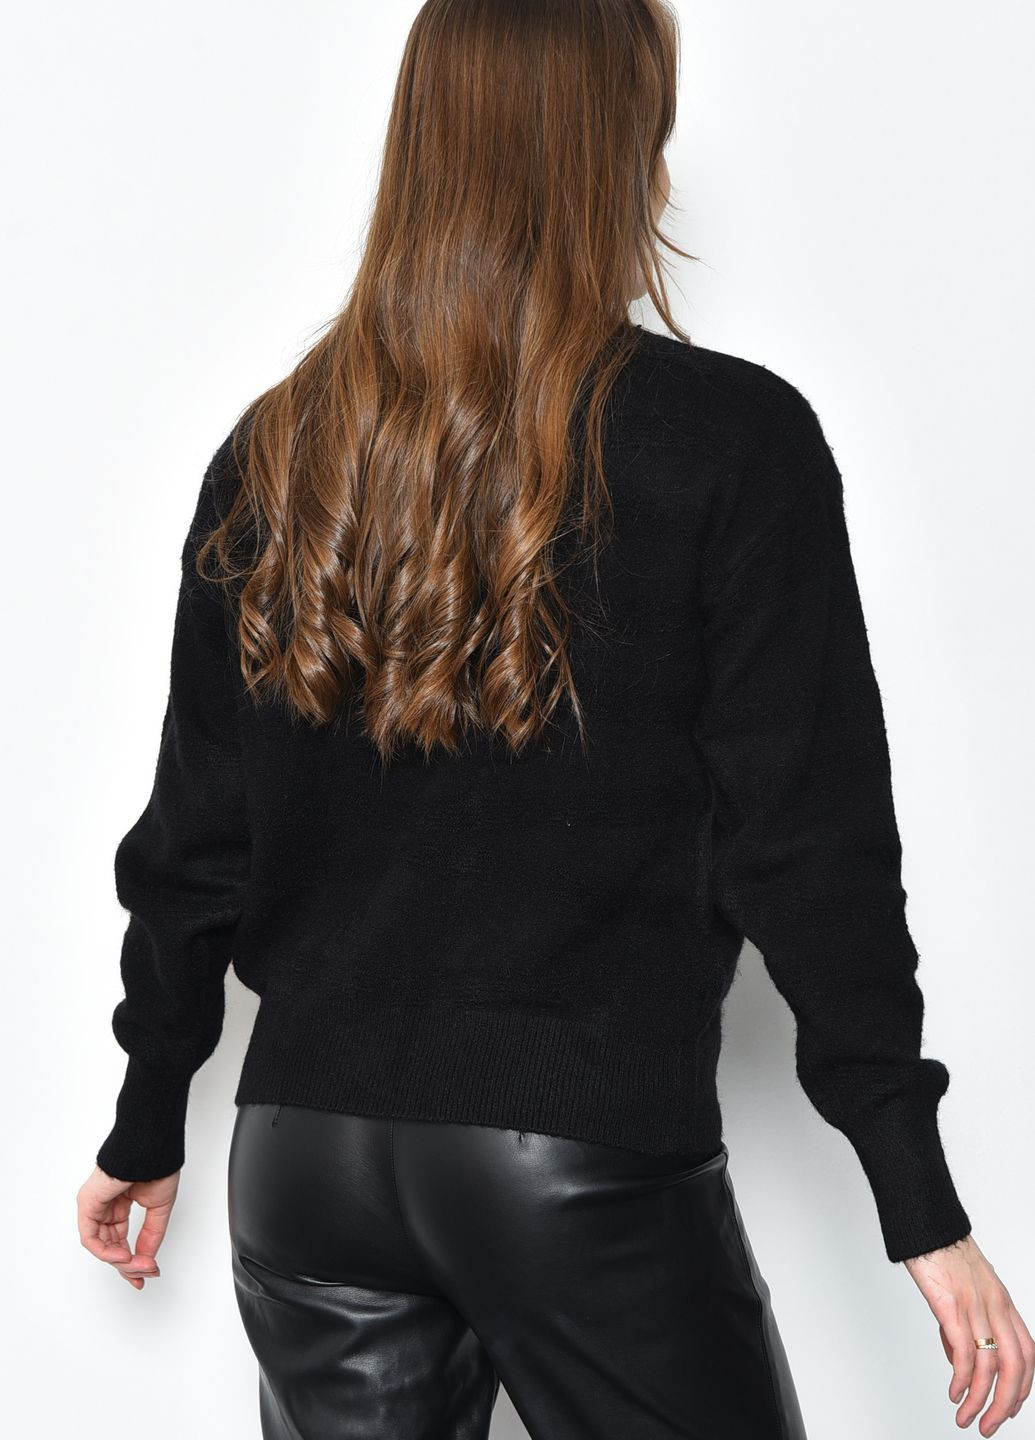 Черный зимний свитер женский ангора черного цвета пуловер Let's Shop